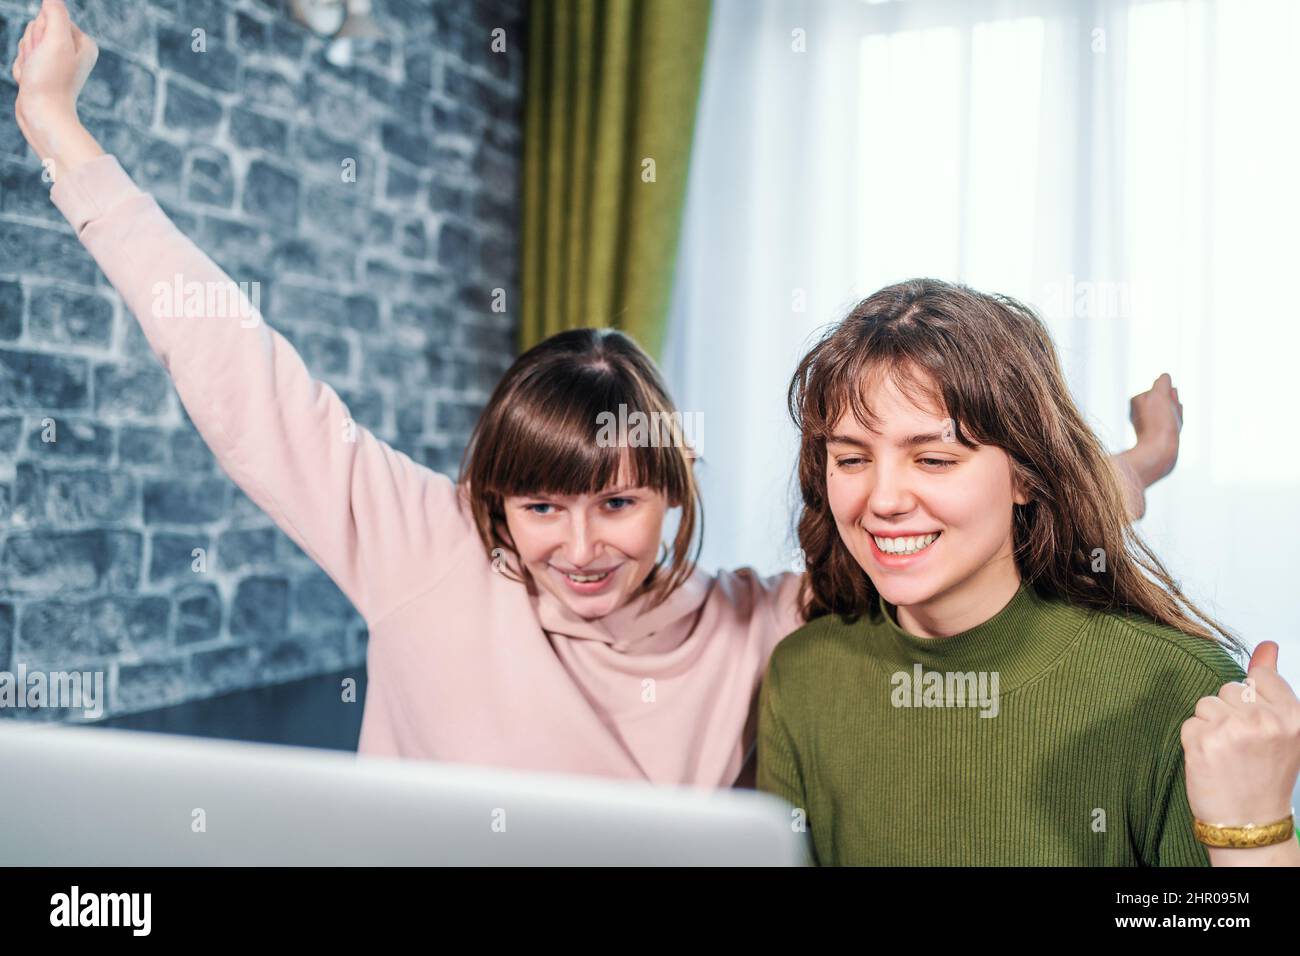 Les jeunes filles du caucase reçoivent de bonnes nouvelles ou gagnent la loterie regardant l'ordinateur portable. Bonne surprise fille obtient l'émotion positive. Banque D'Images